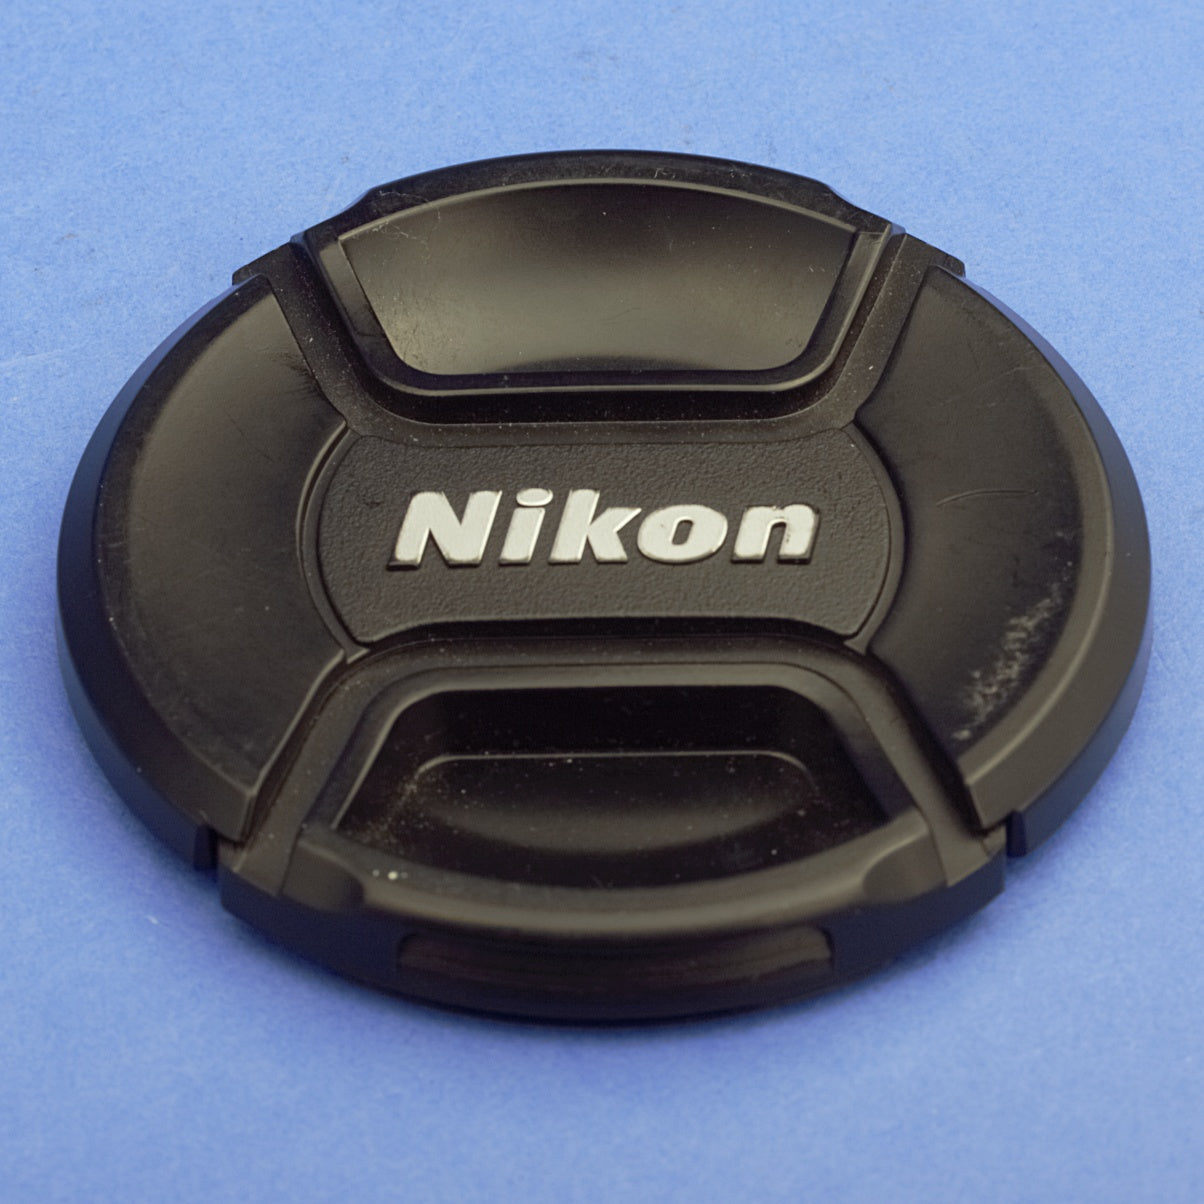 Nikon AF-S Nikkor 16-85mm 3.5-5.6 VR Lens